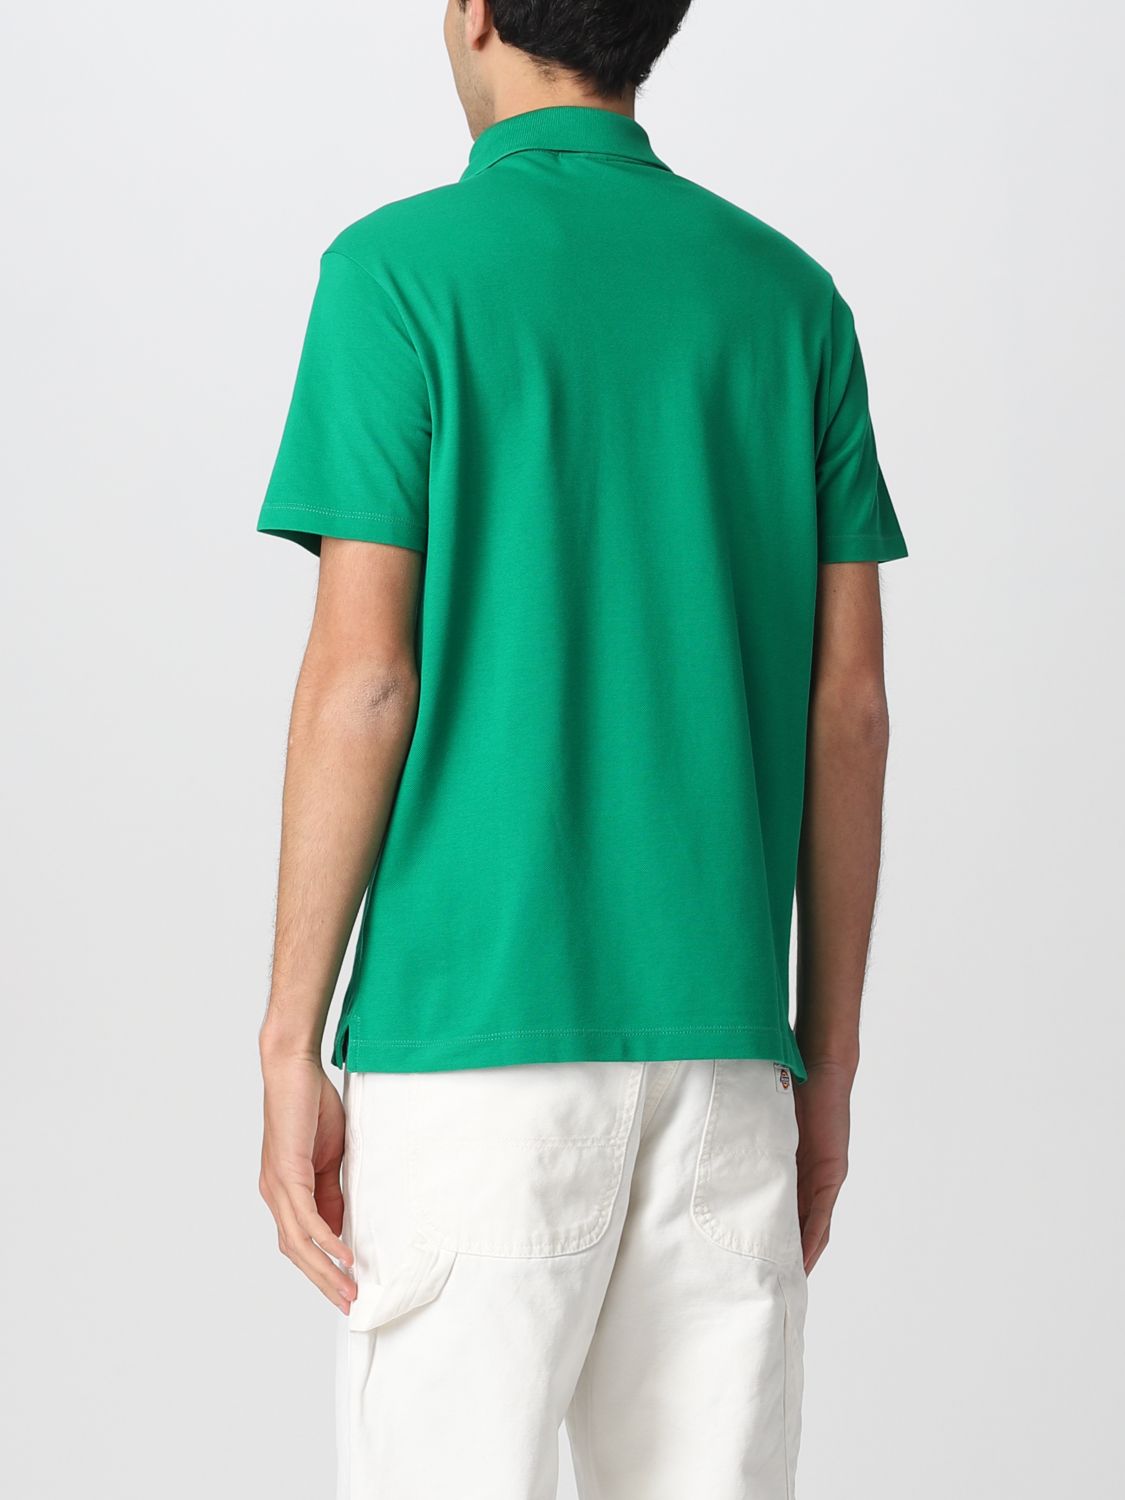 PAUL & SHARK: polo shirt for man - Green | Paul & Shark polo shirt ...